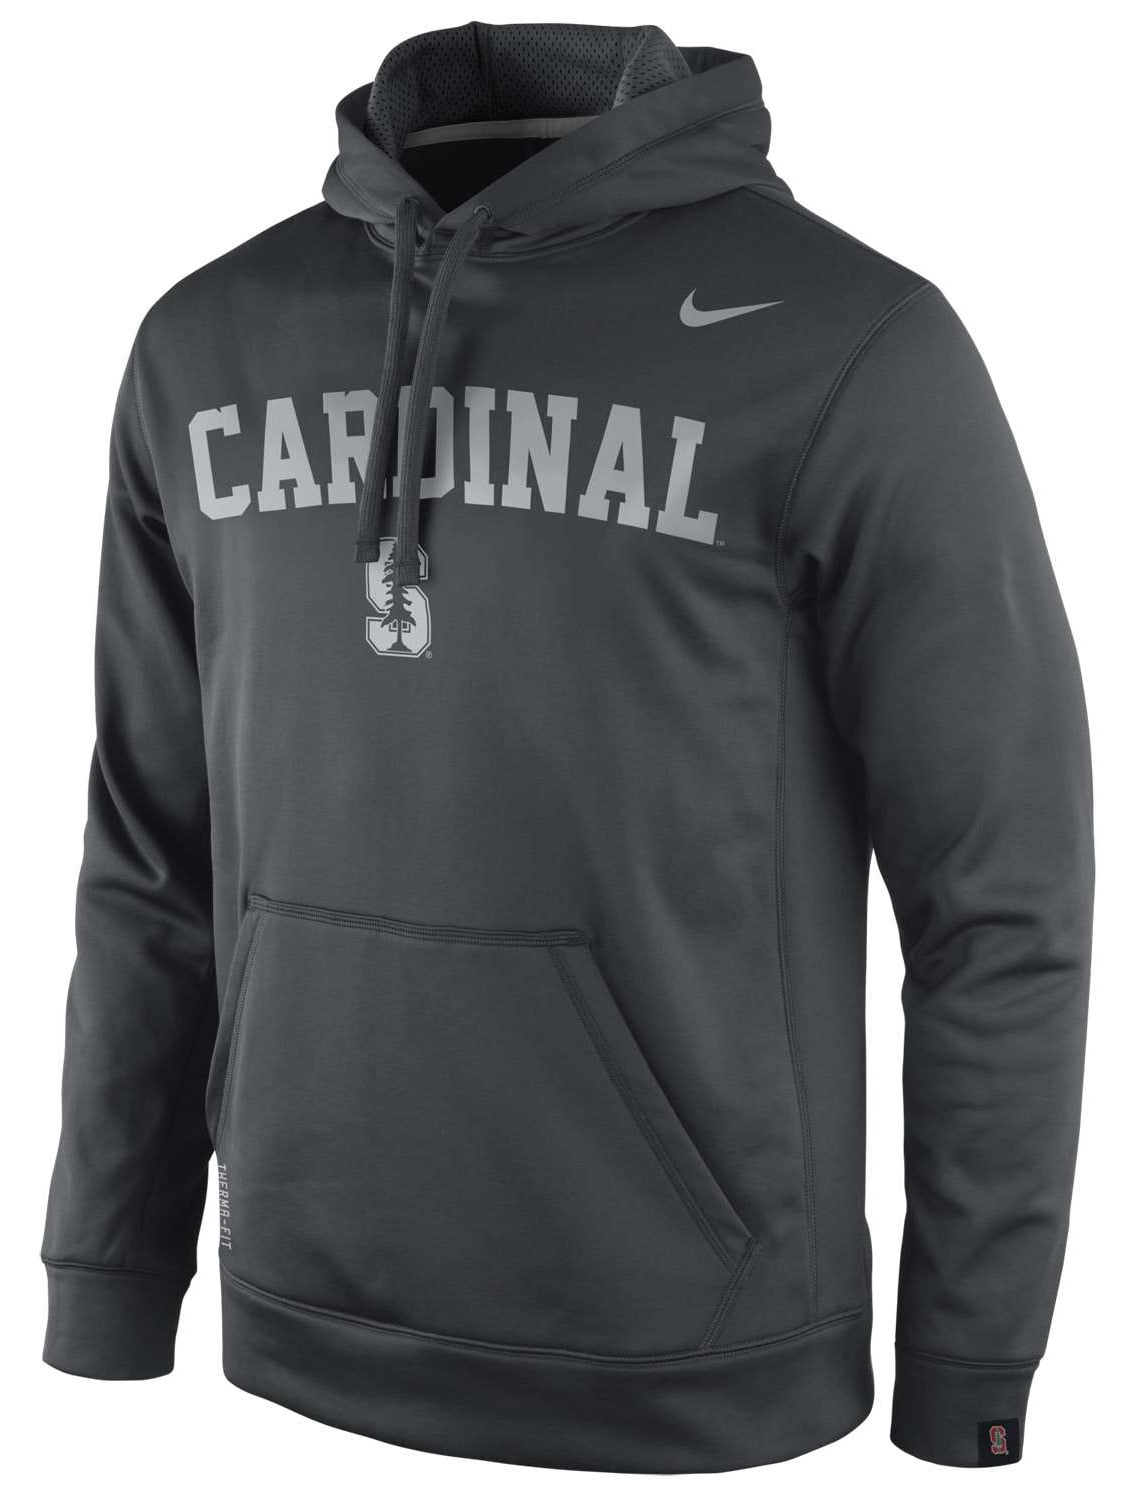 Nike - Nike Stanford Cardinal Platinum KO Hooded Sweatshirt - Walmart ...